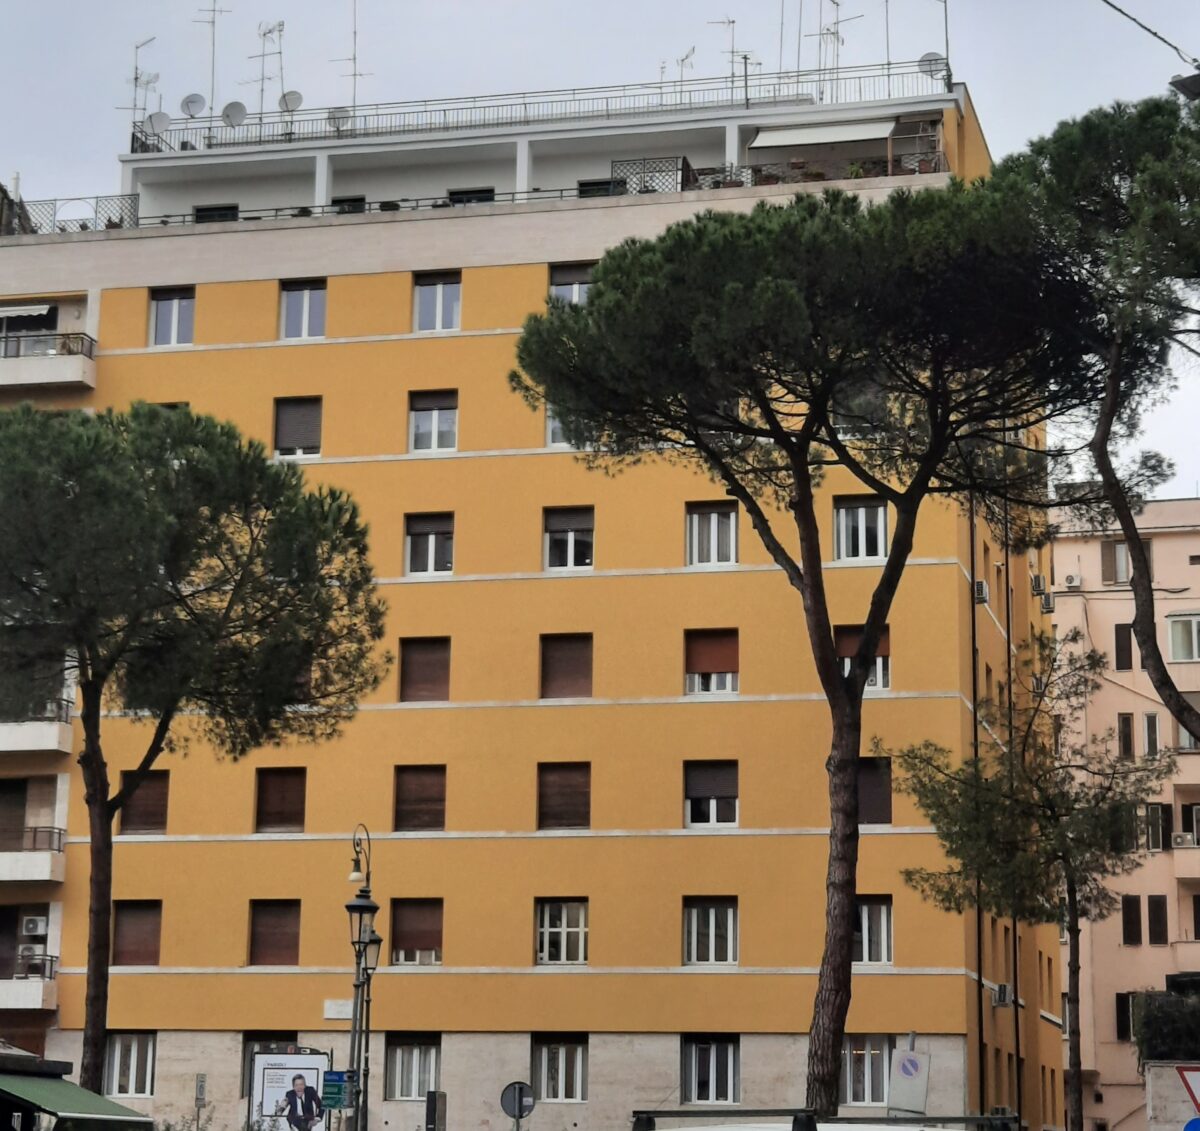 Riqualificazione con cappotto termico Boerotherm dell’edificio in Piazza d’Istria a Roma di Boero